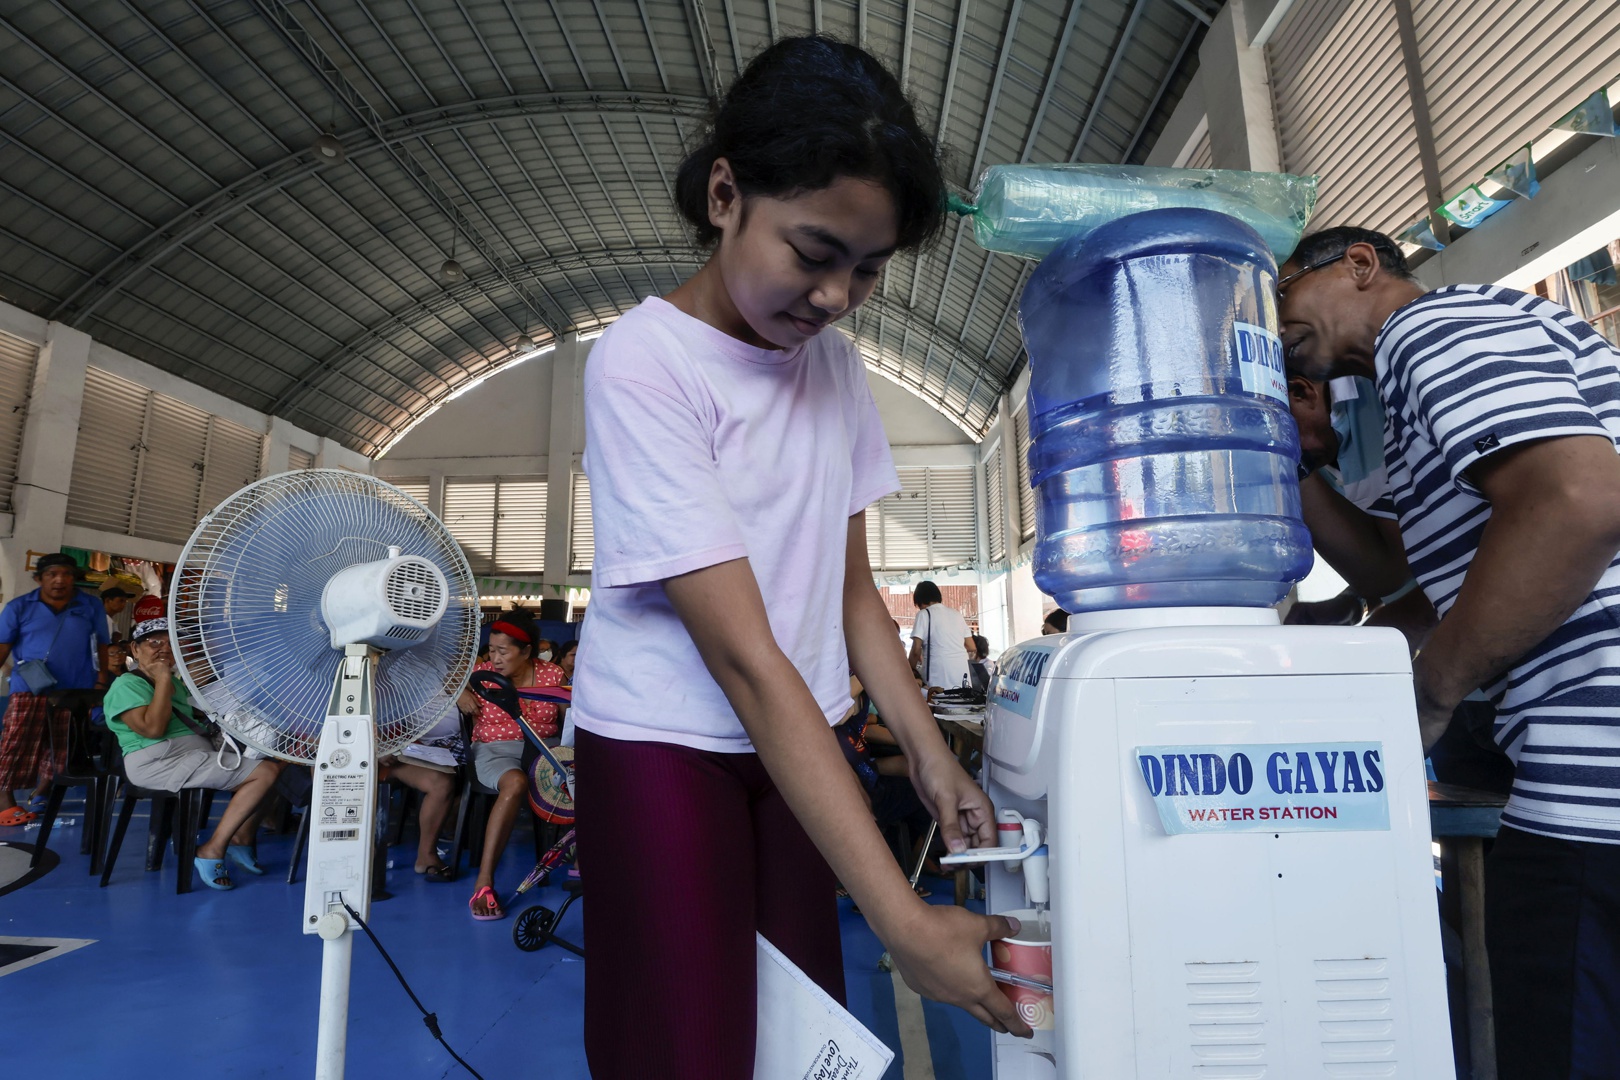 filipinas mantiene el cierre de colegios en diversas provincias debido al calor extremo